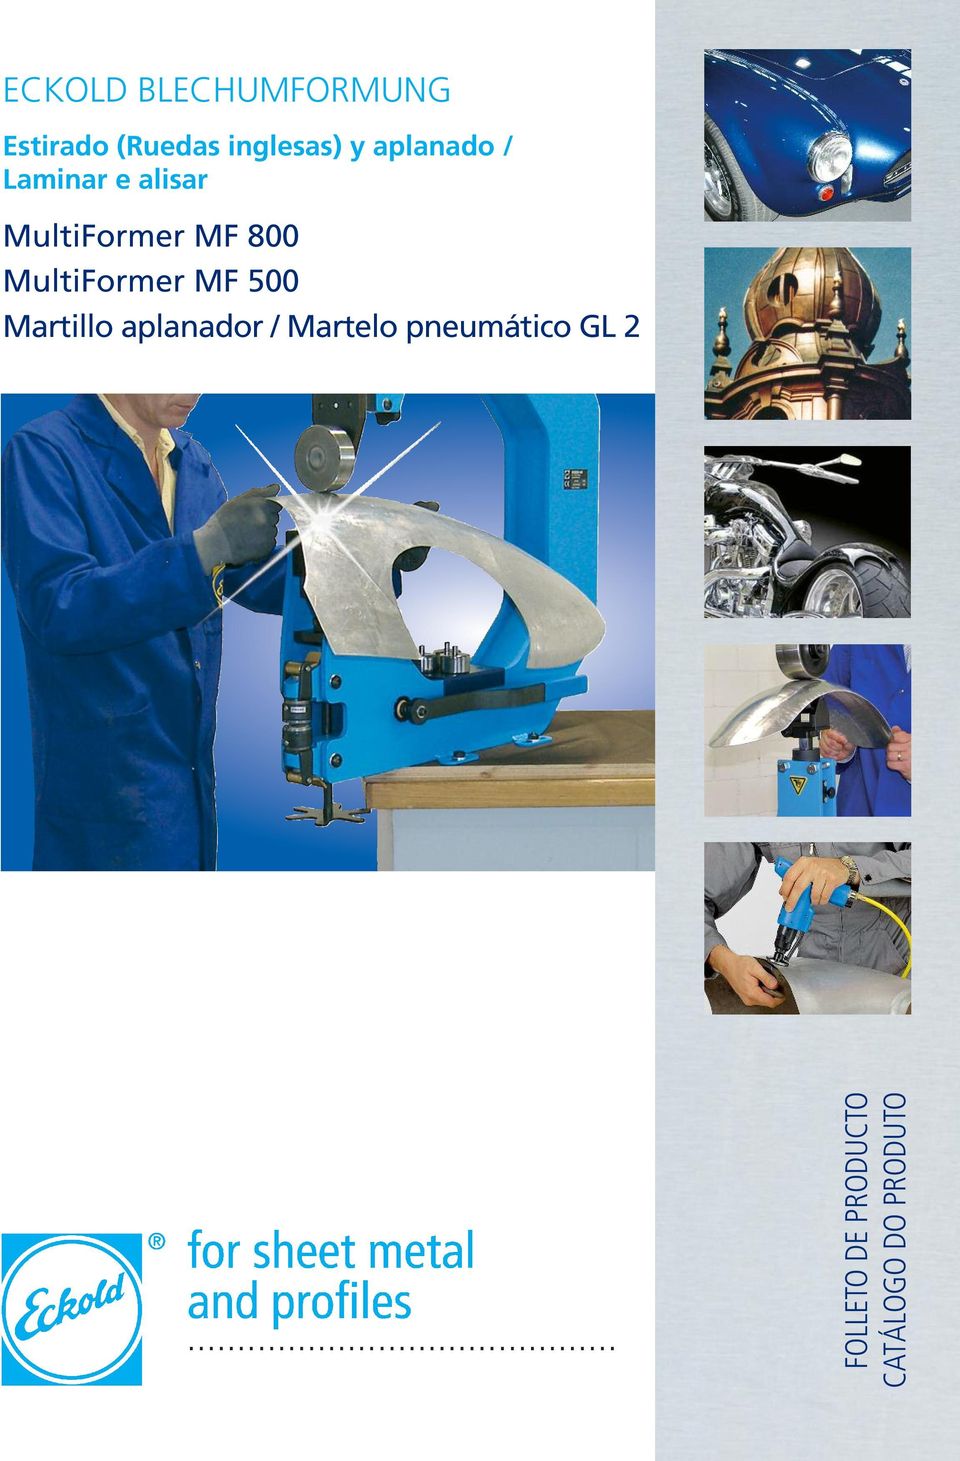 MultiFormer MF 500 Martillo aplanador / Martelo